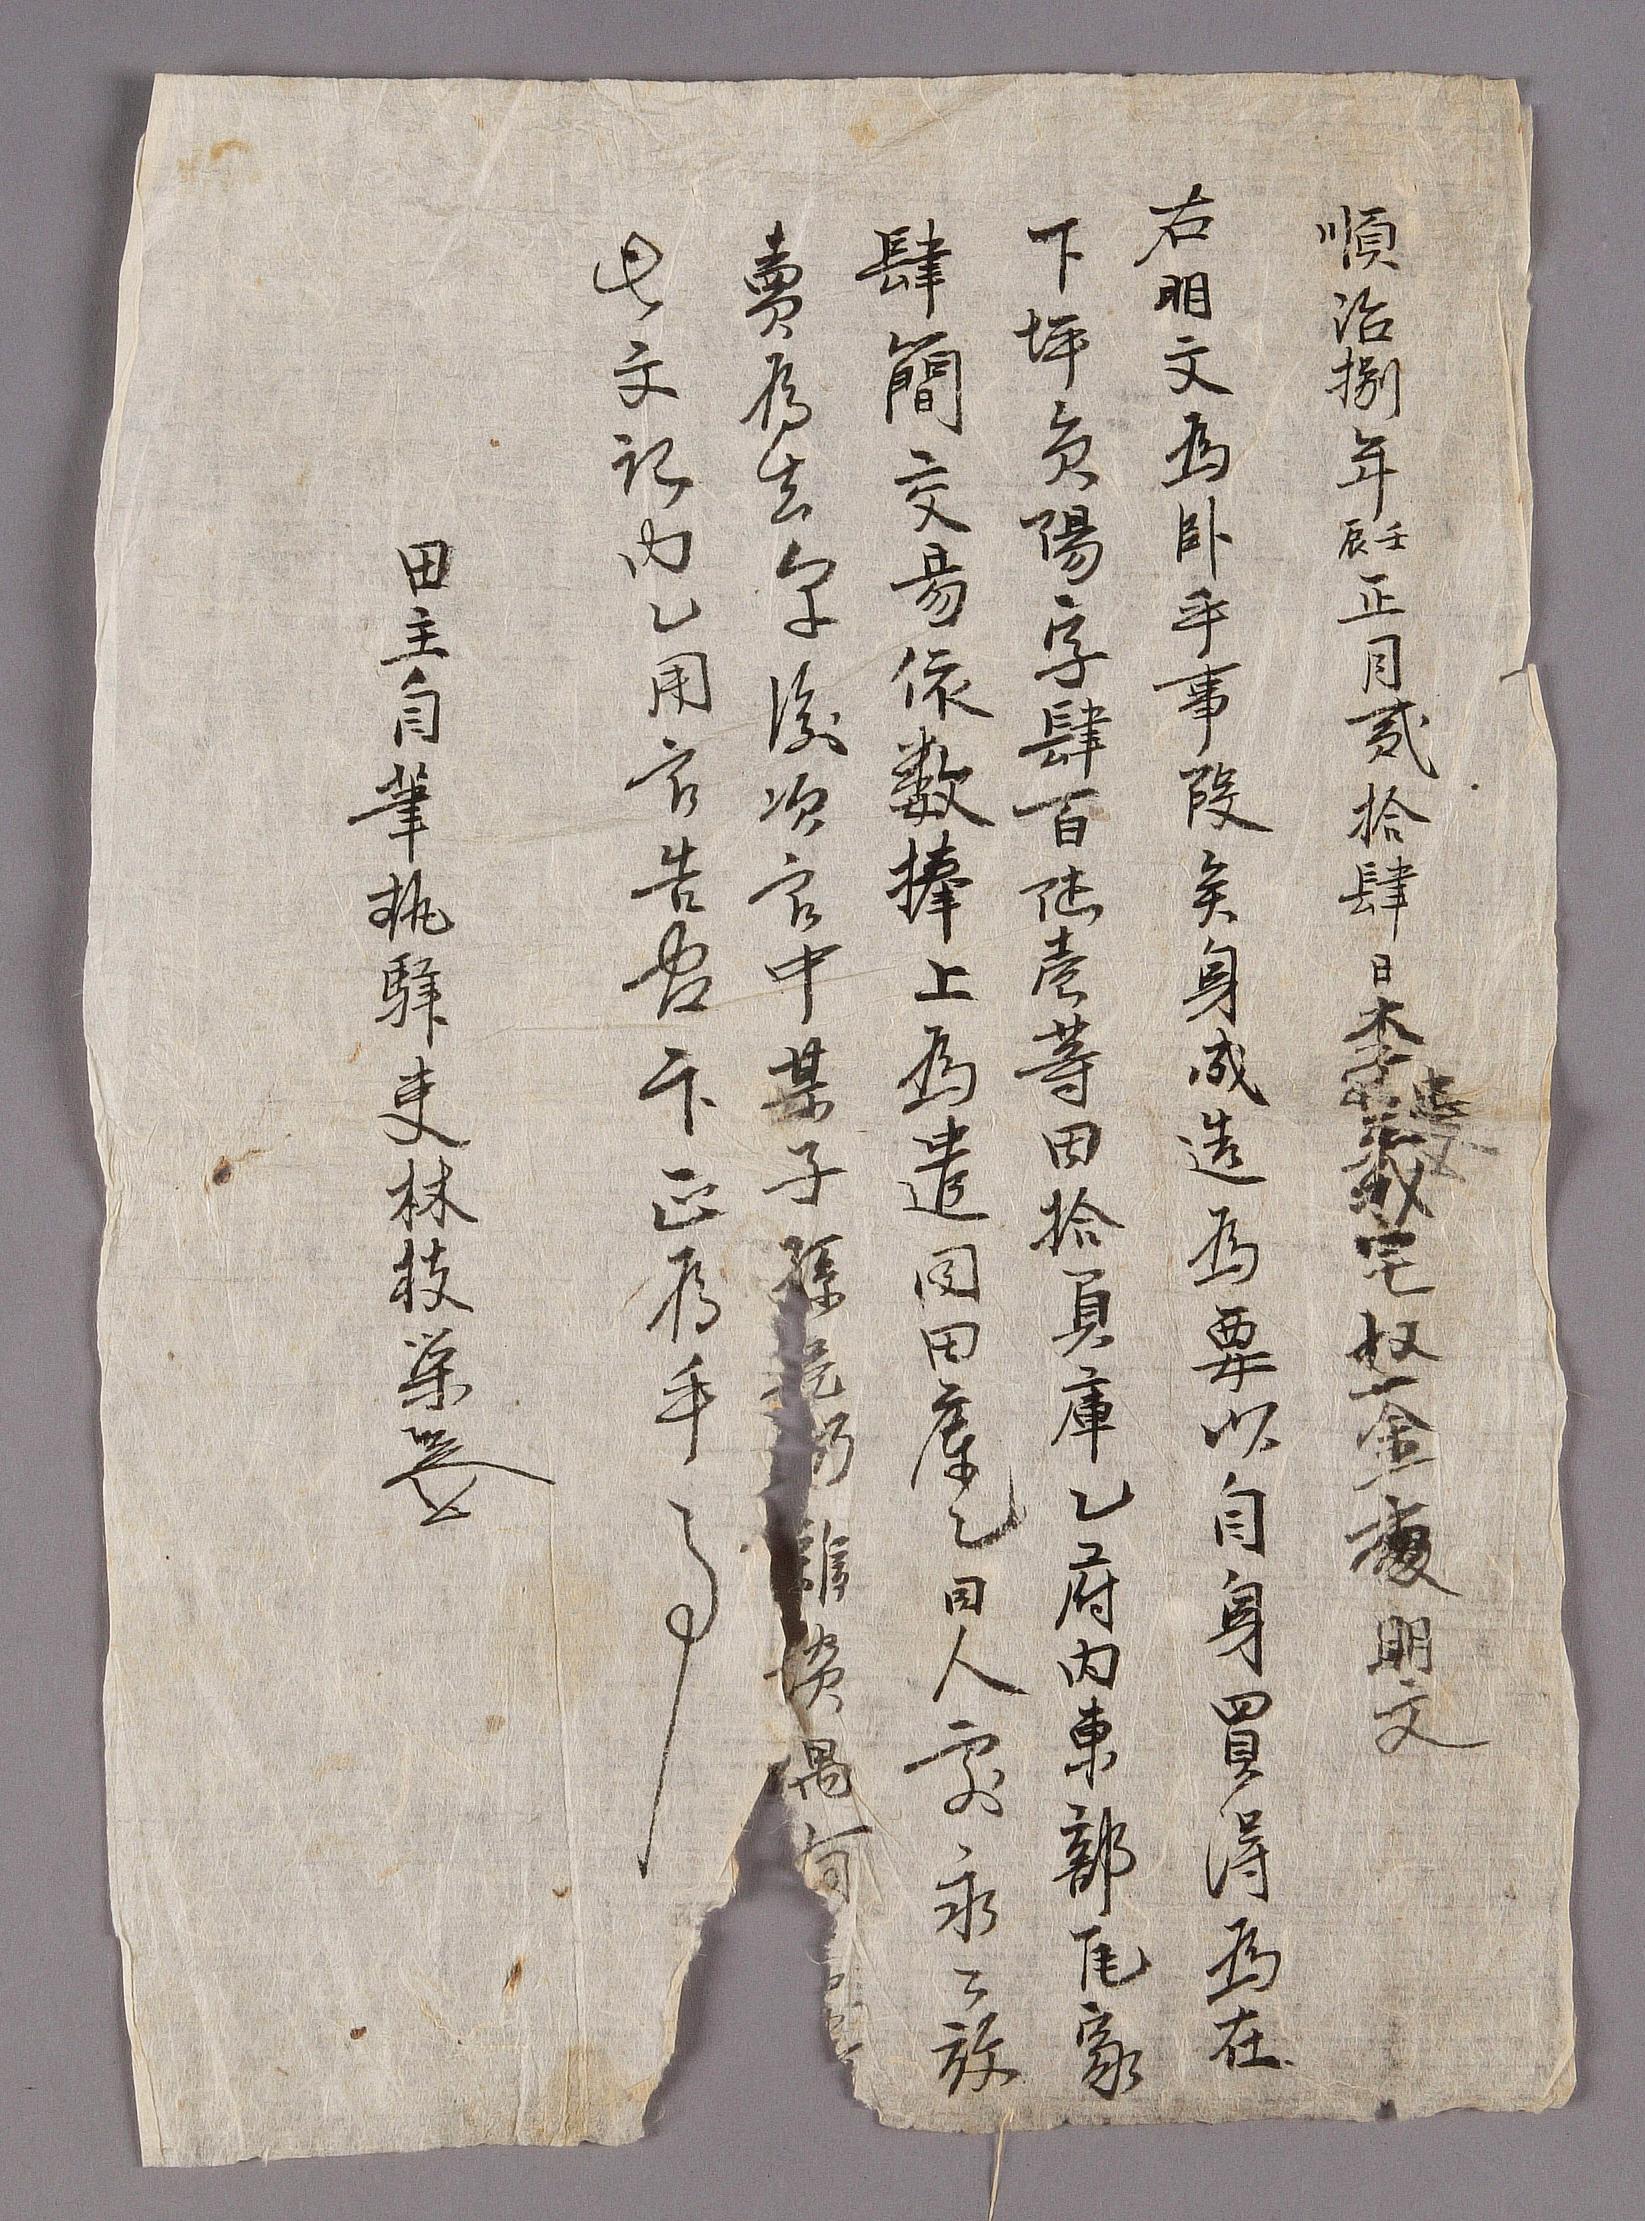 역리 임지영(林枝榮)이 1651년에 작성한 전답 방매문기